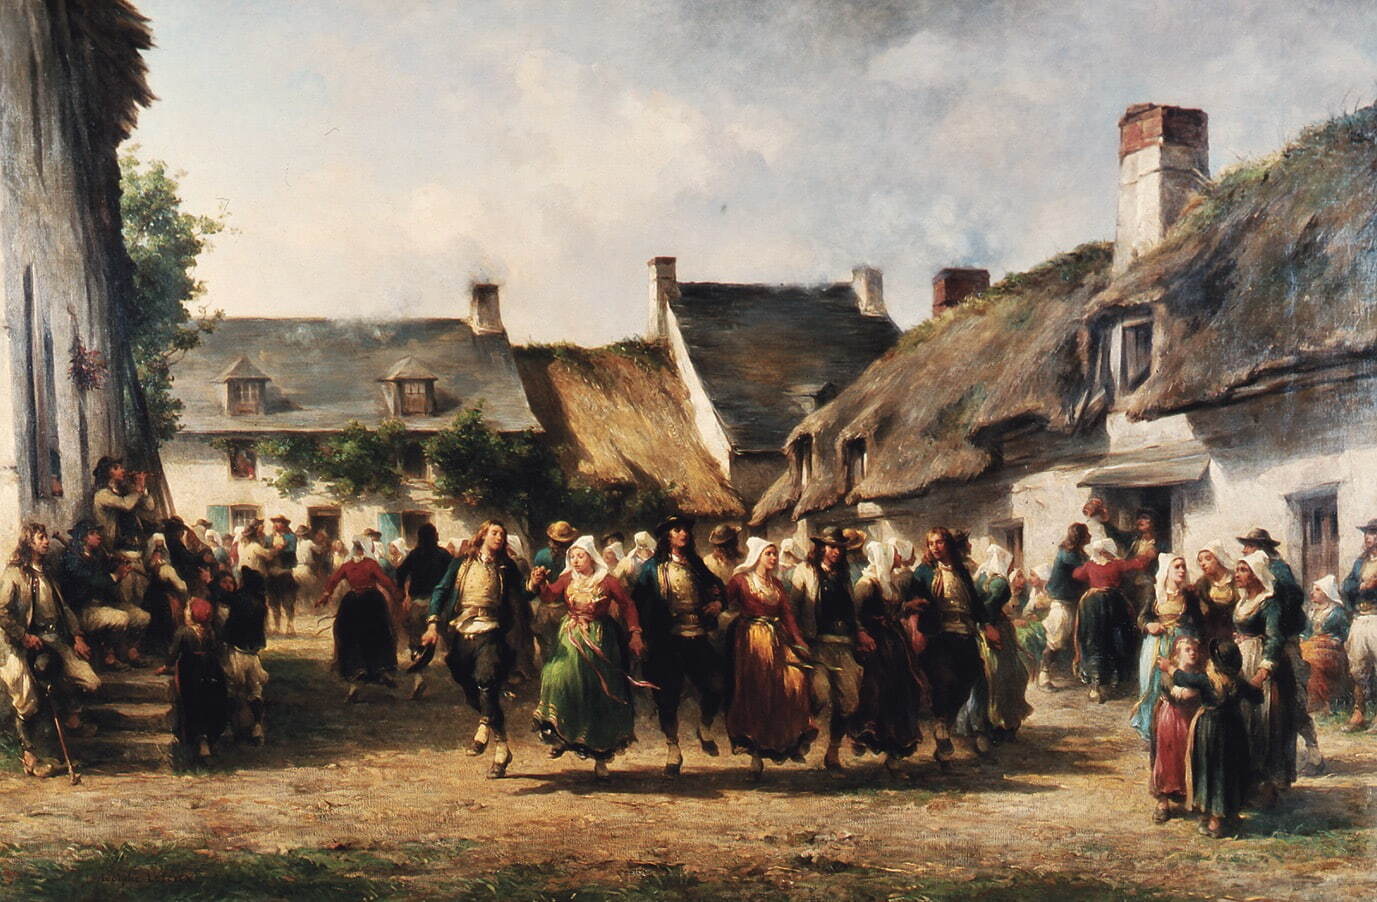 アドルフ・ルルー 《ブルターニュの婚礼》 1863年 カンペール美術館
Collection du musée des beaux-arts de Quimper, France